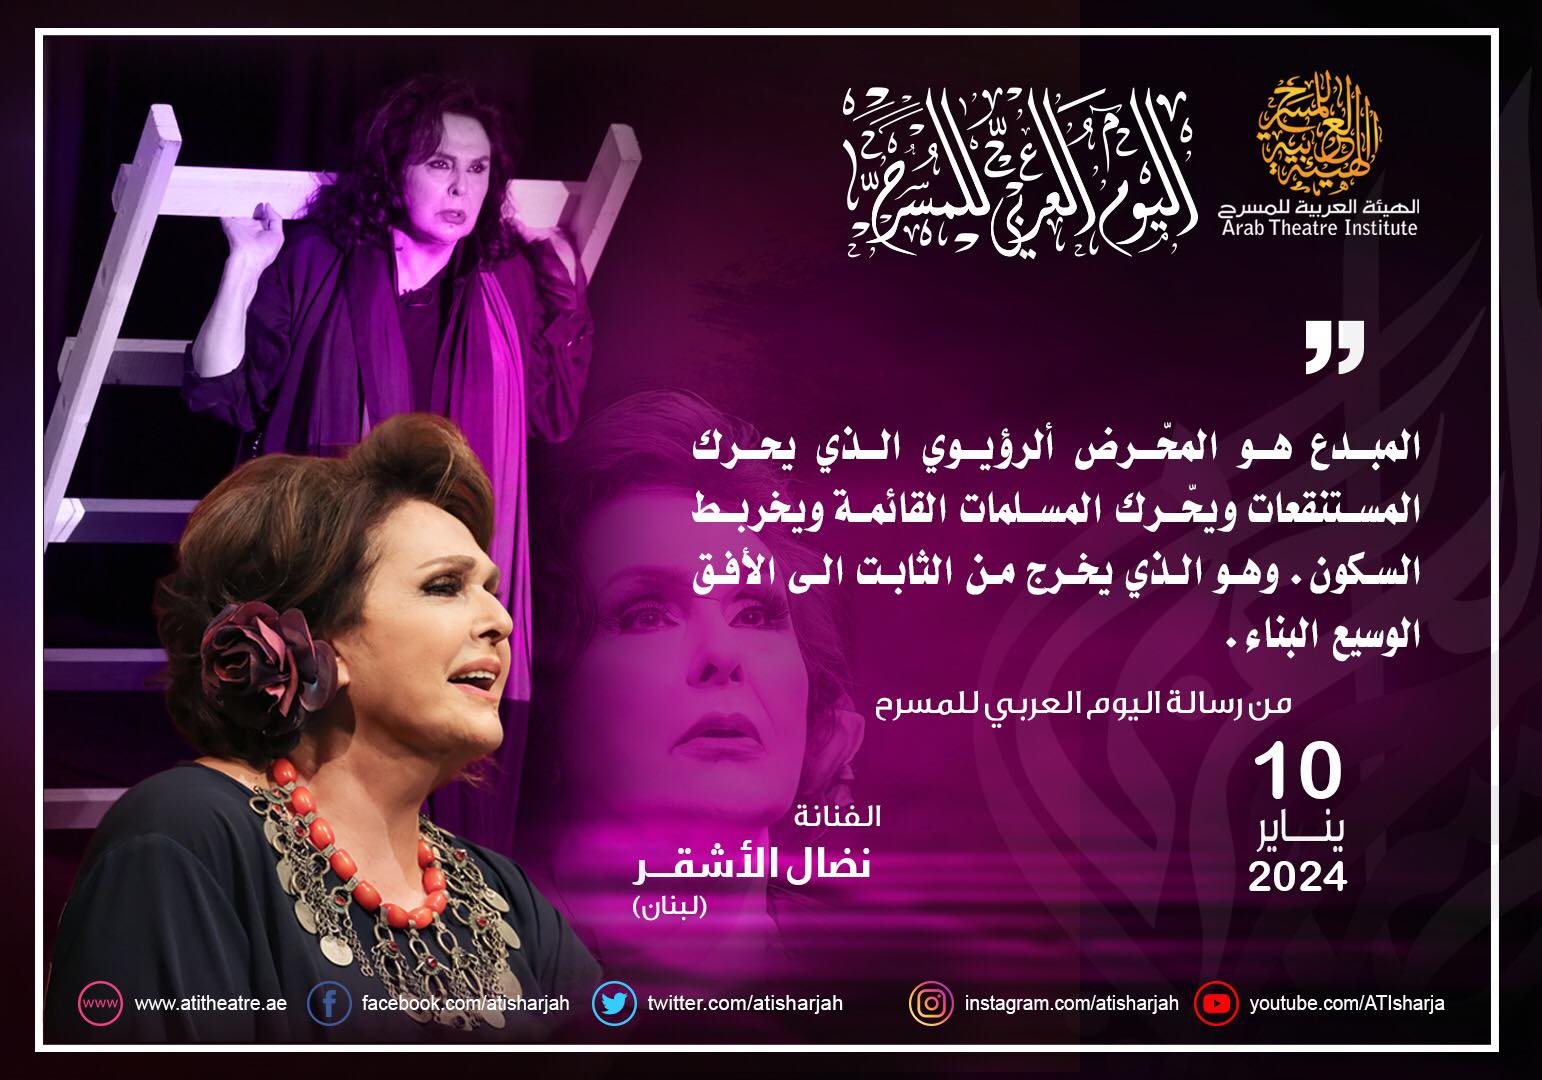 كلمات من رسالة اليوم العربي للمسرح التي ستلقيها الفنانة نضال الاشقر